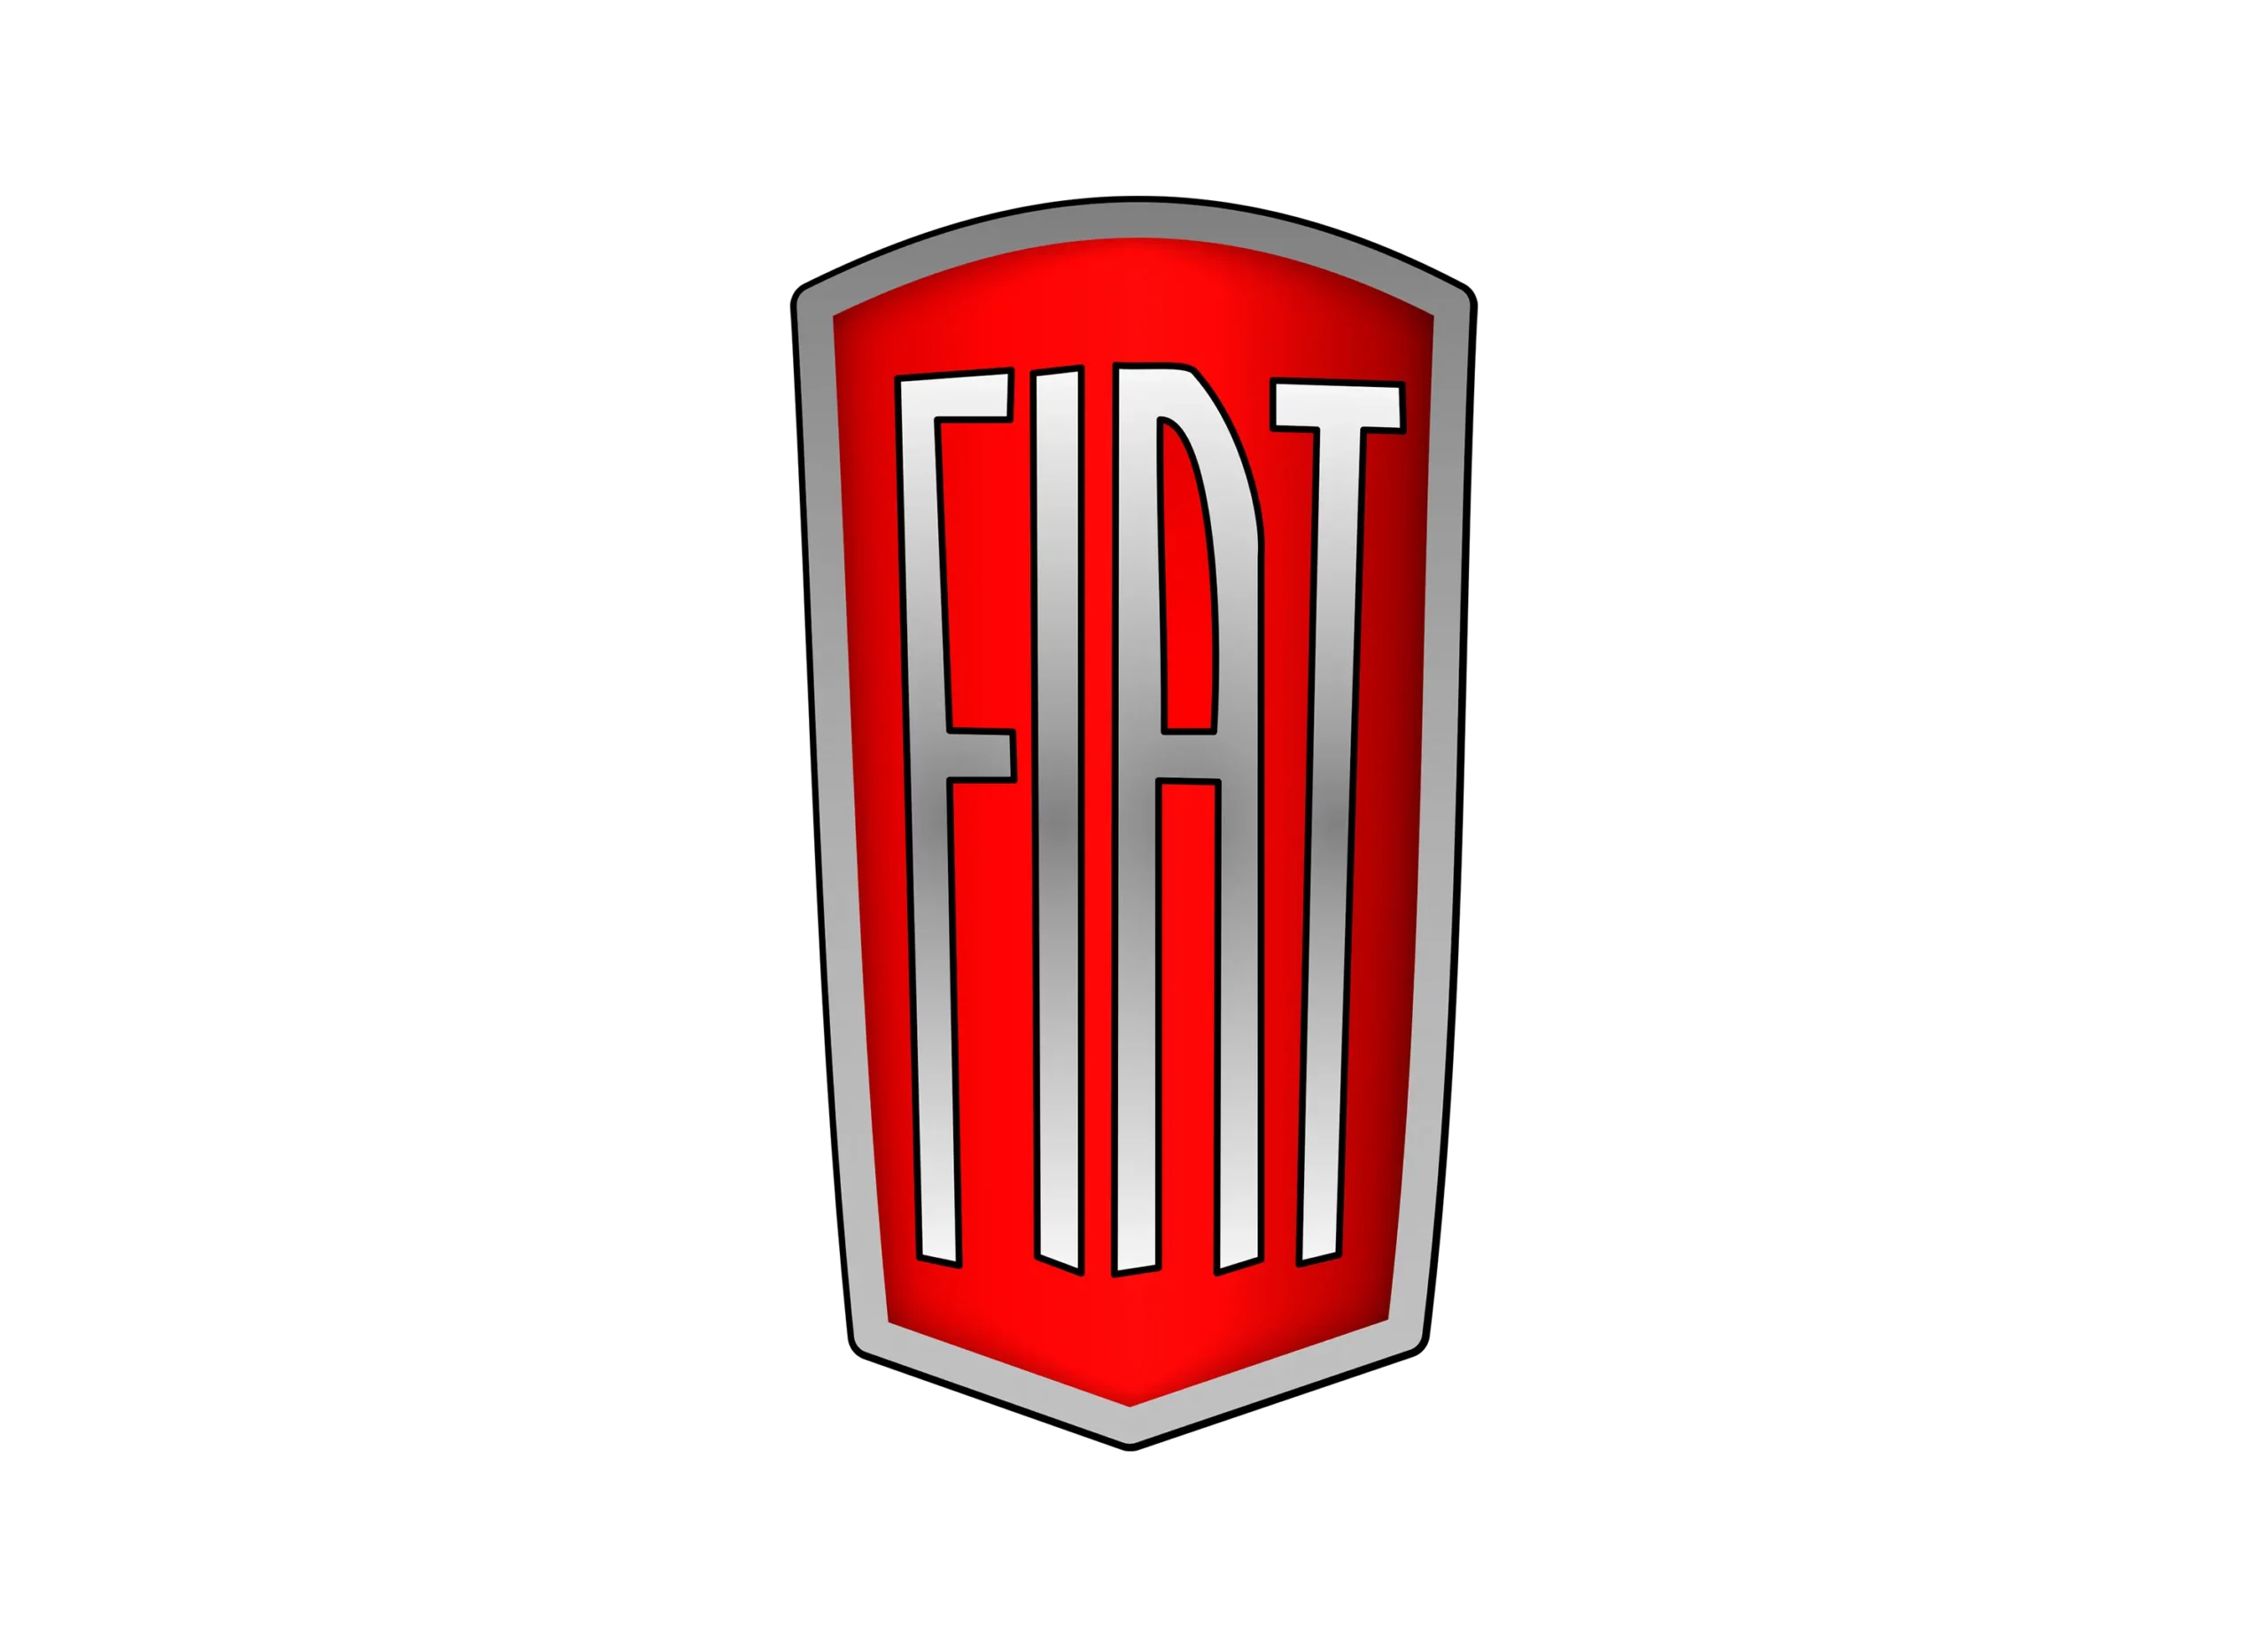 Fiat logo 1938-1949